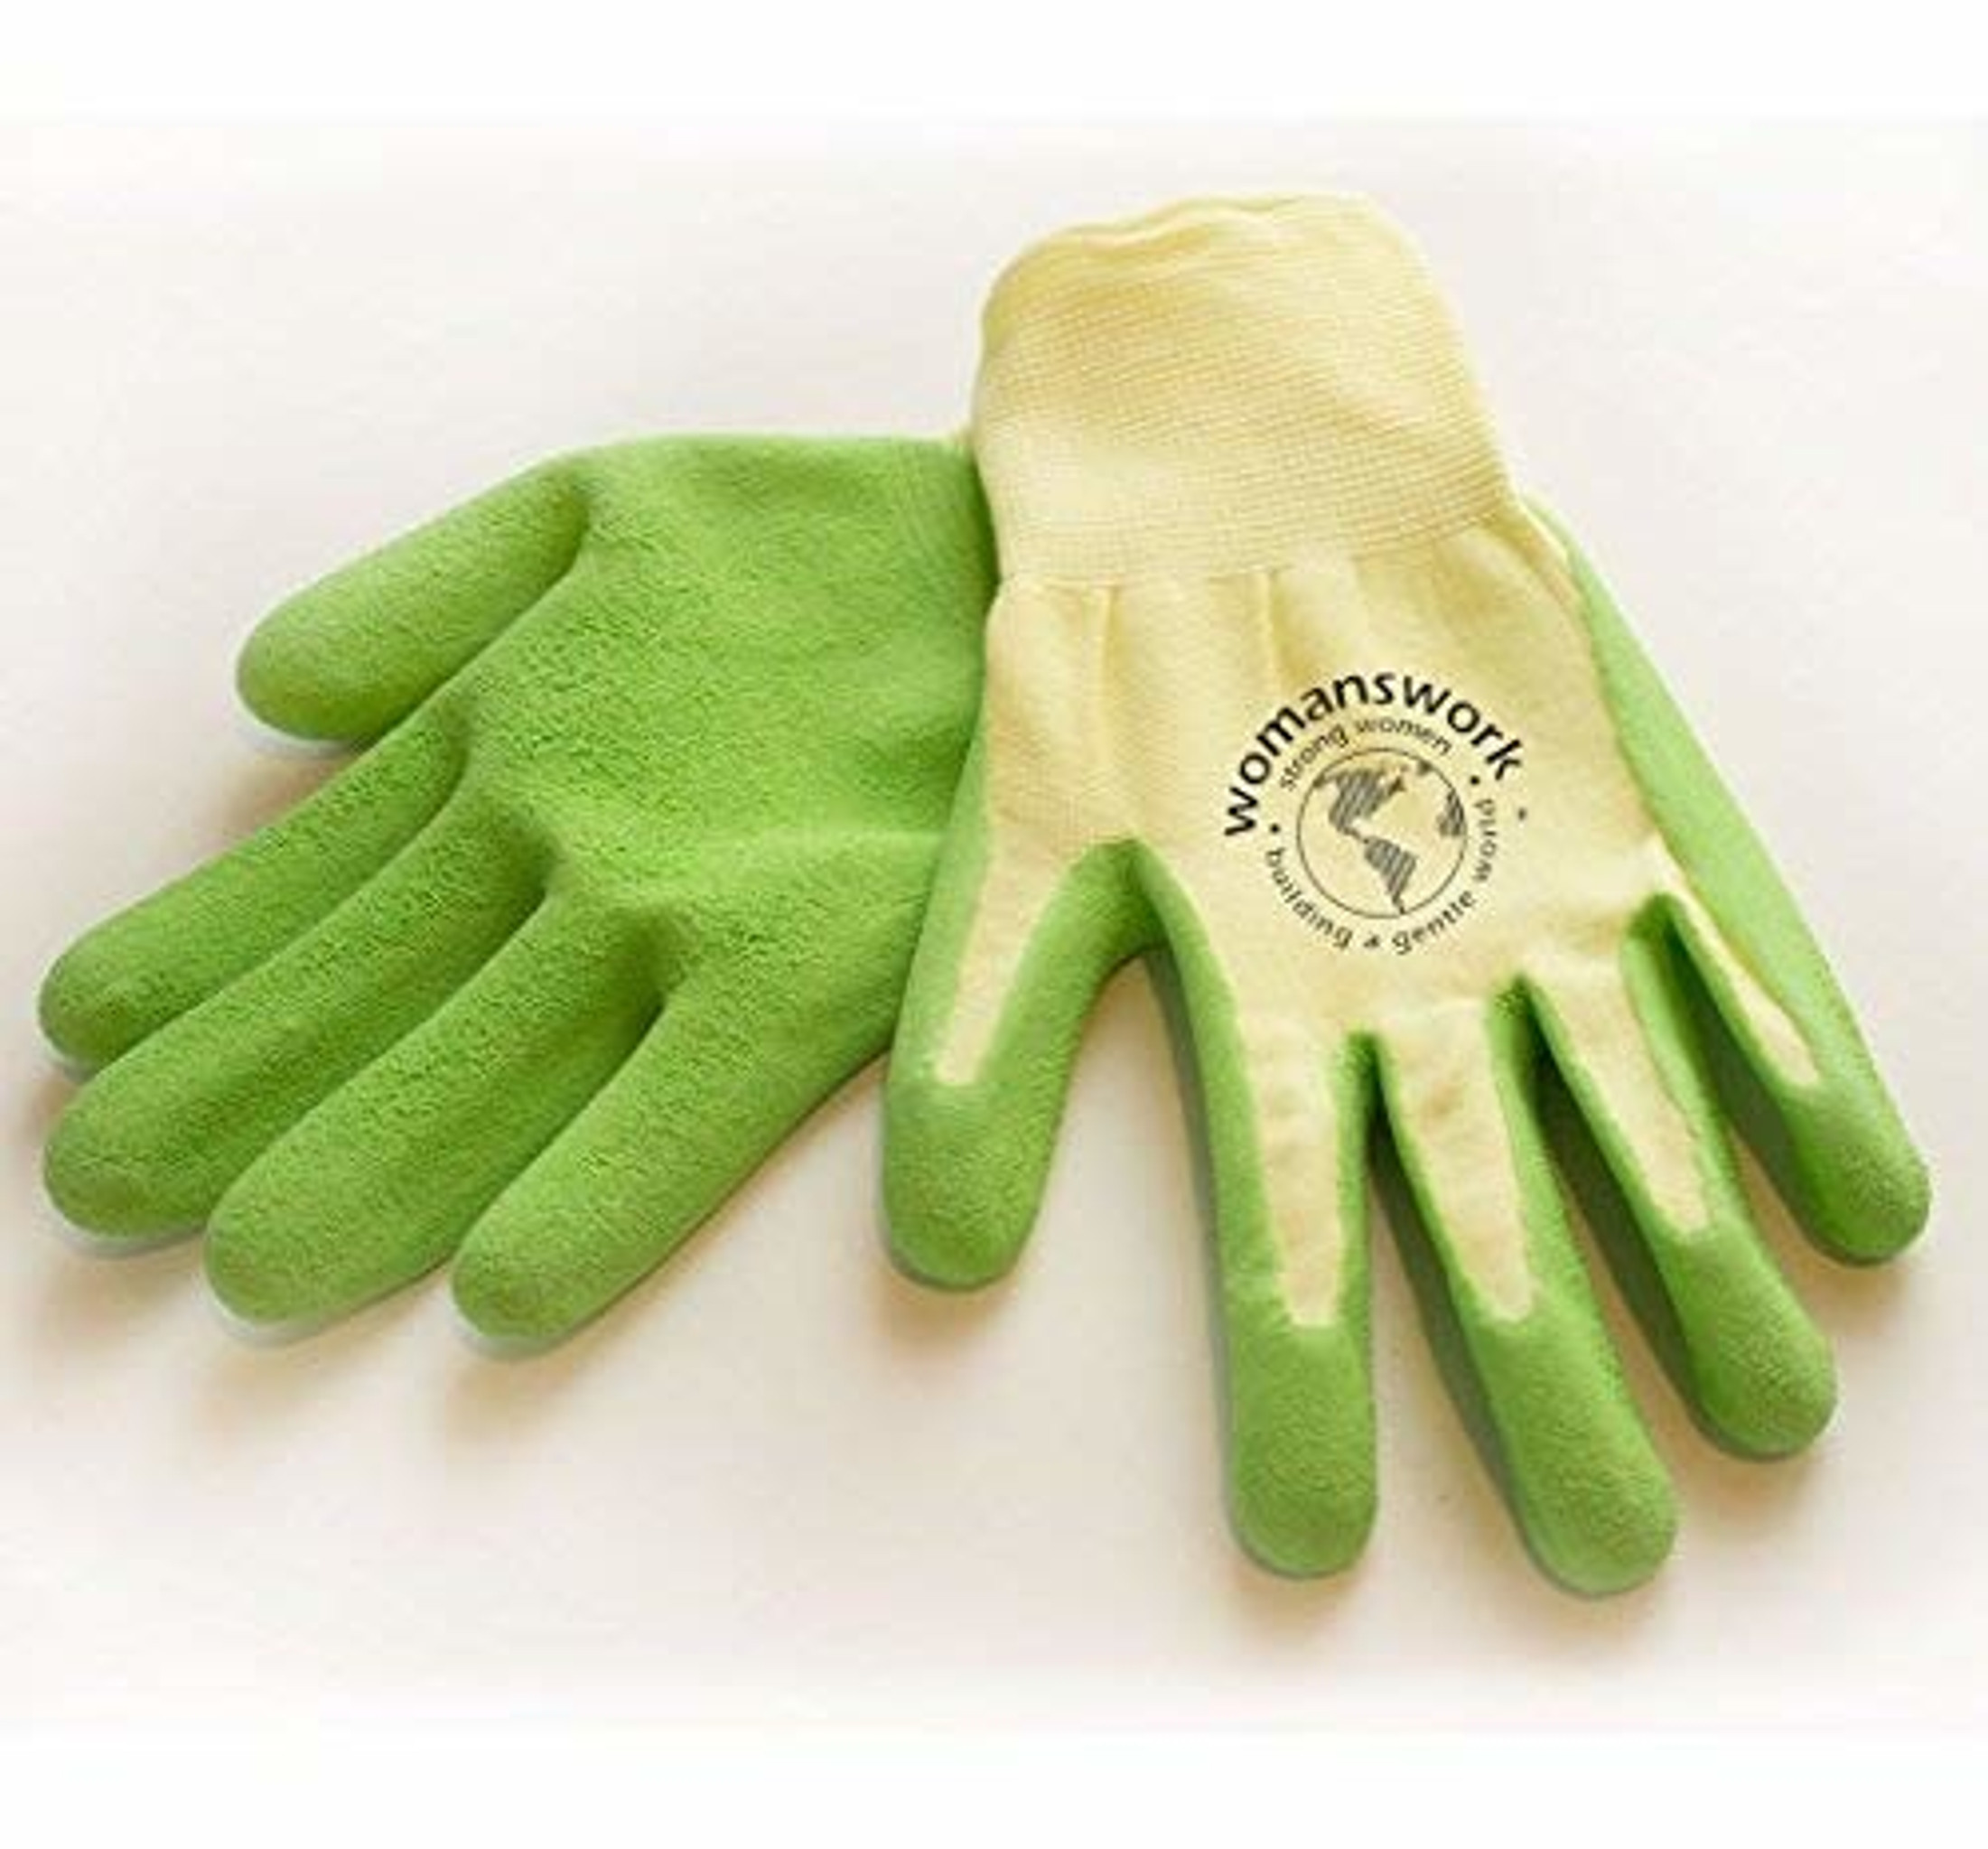 Womenswork Weeding Glove for Garden Work, Green Medium